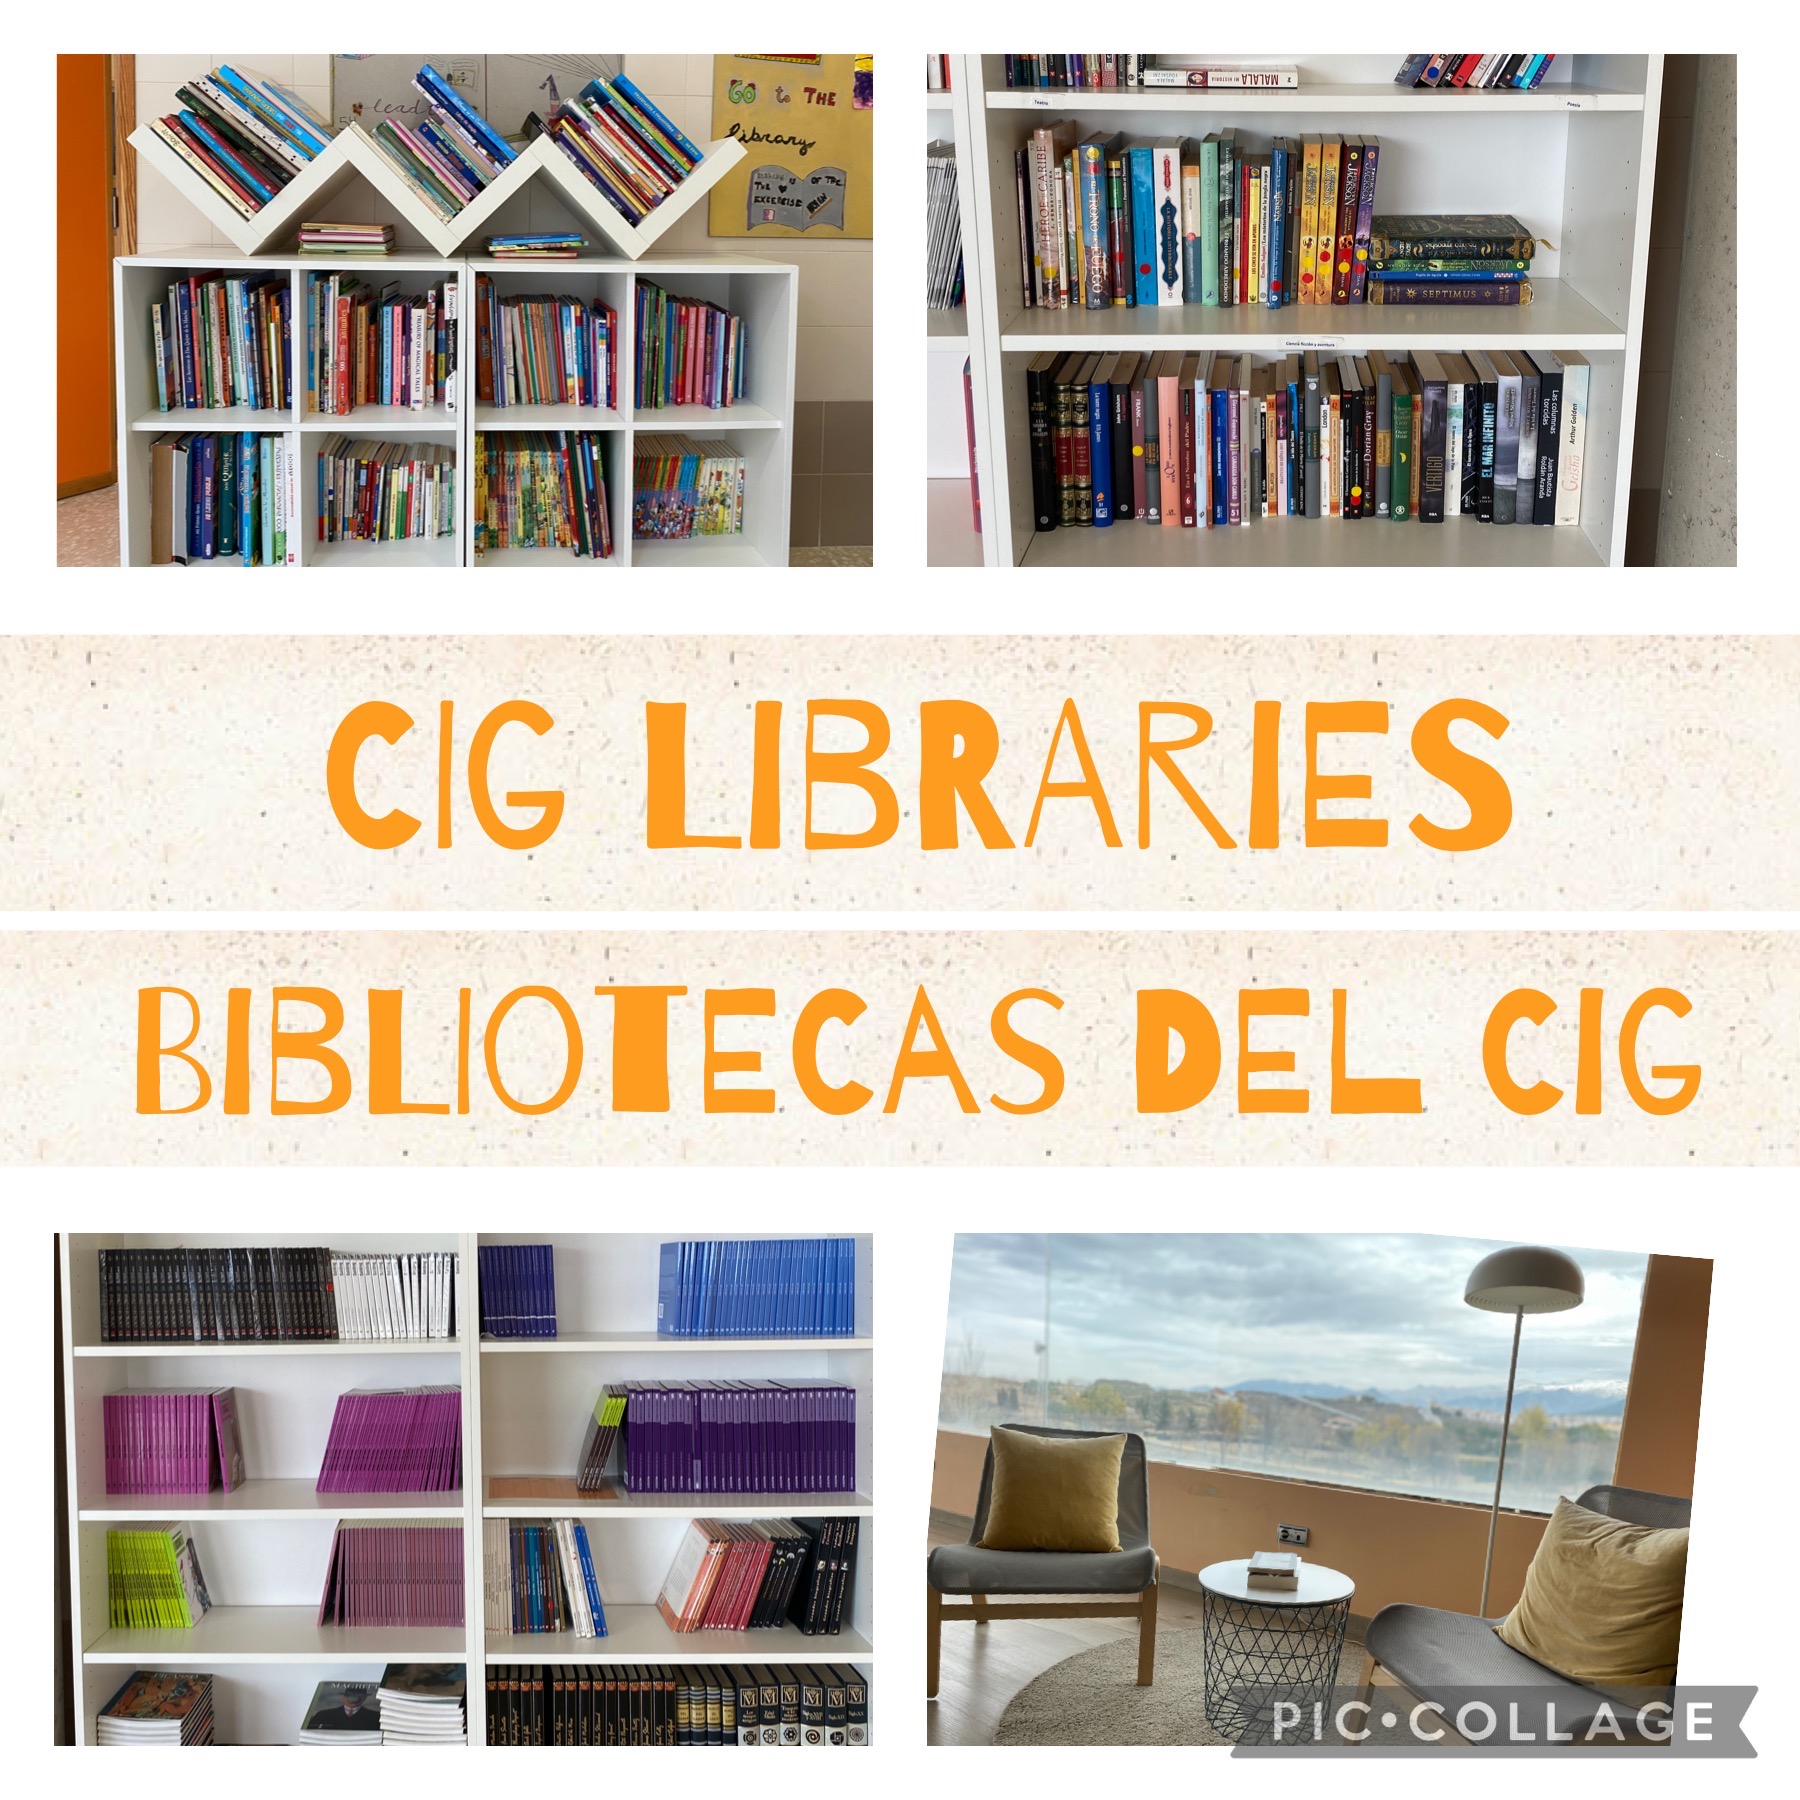 ¡Nuestra biblioteca está creciendo!